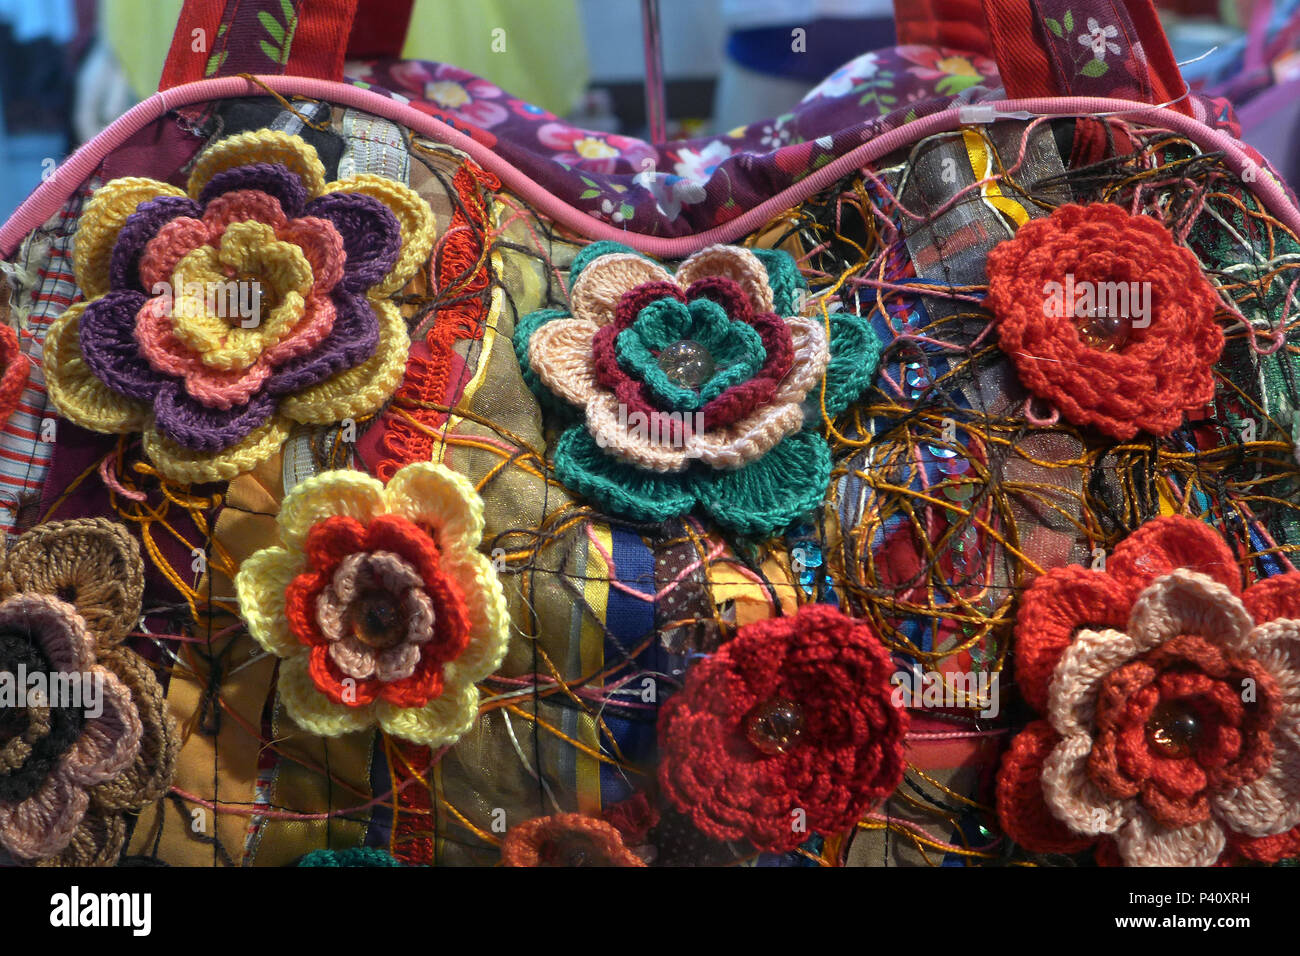 Bolsa com flores de crochê hi-res stock photography and images - Alamy